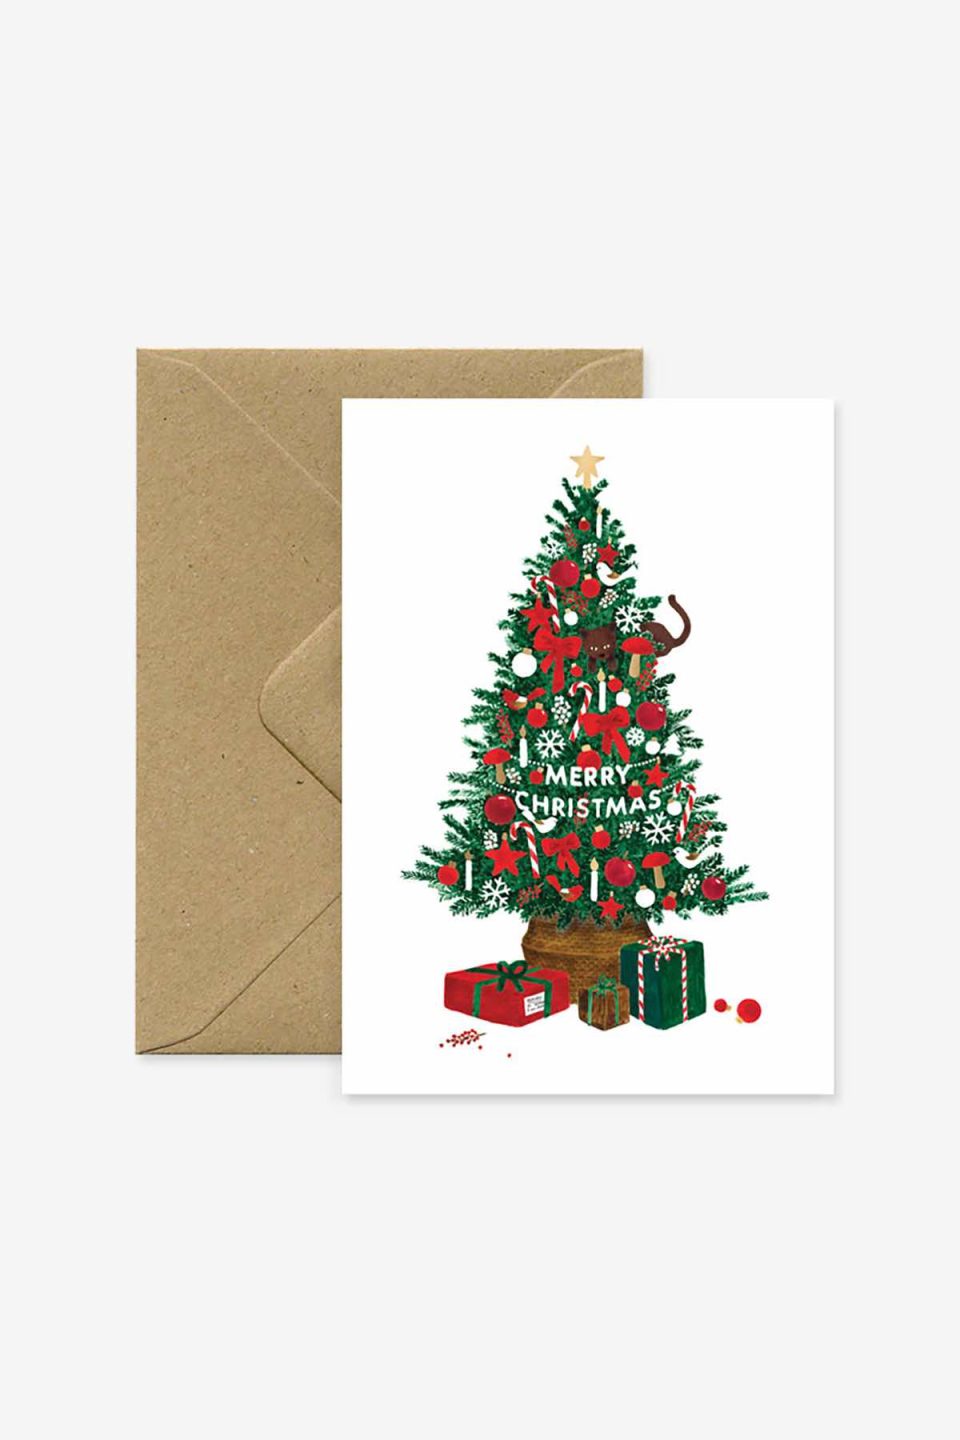 Božična čestitka s motivom okićenog božićnog drvca s poklonima i natpisom merry christmas, iz se vidi smeđa kuverta